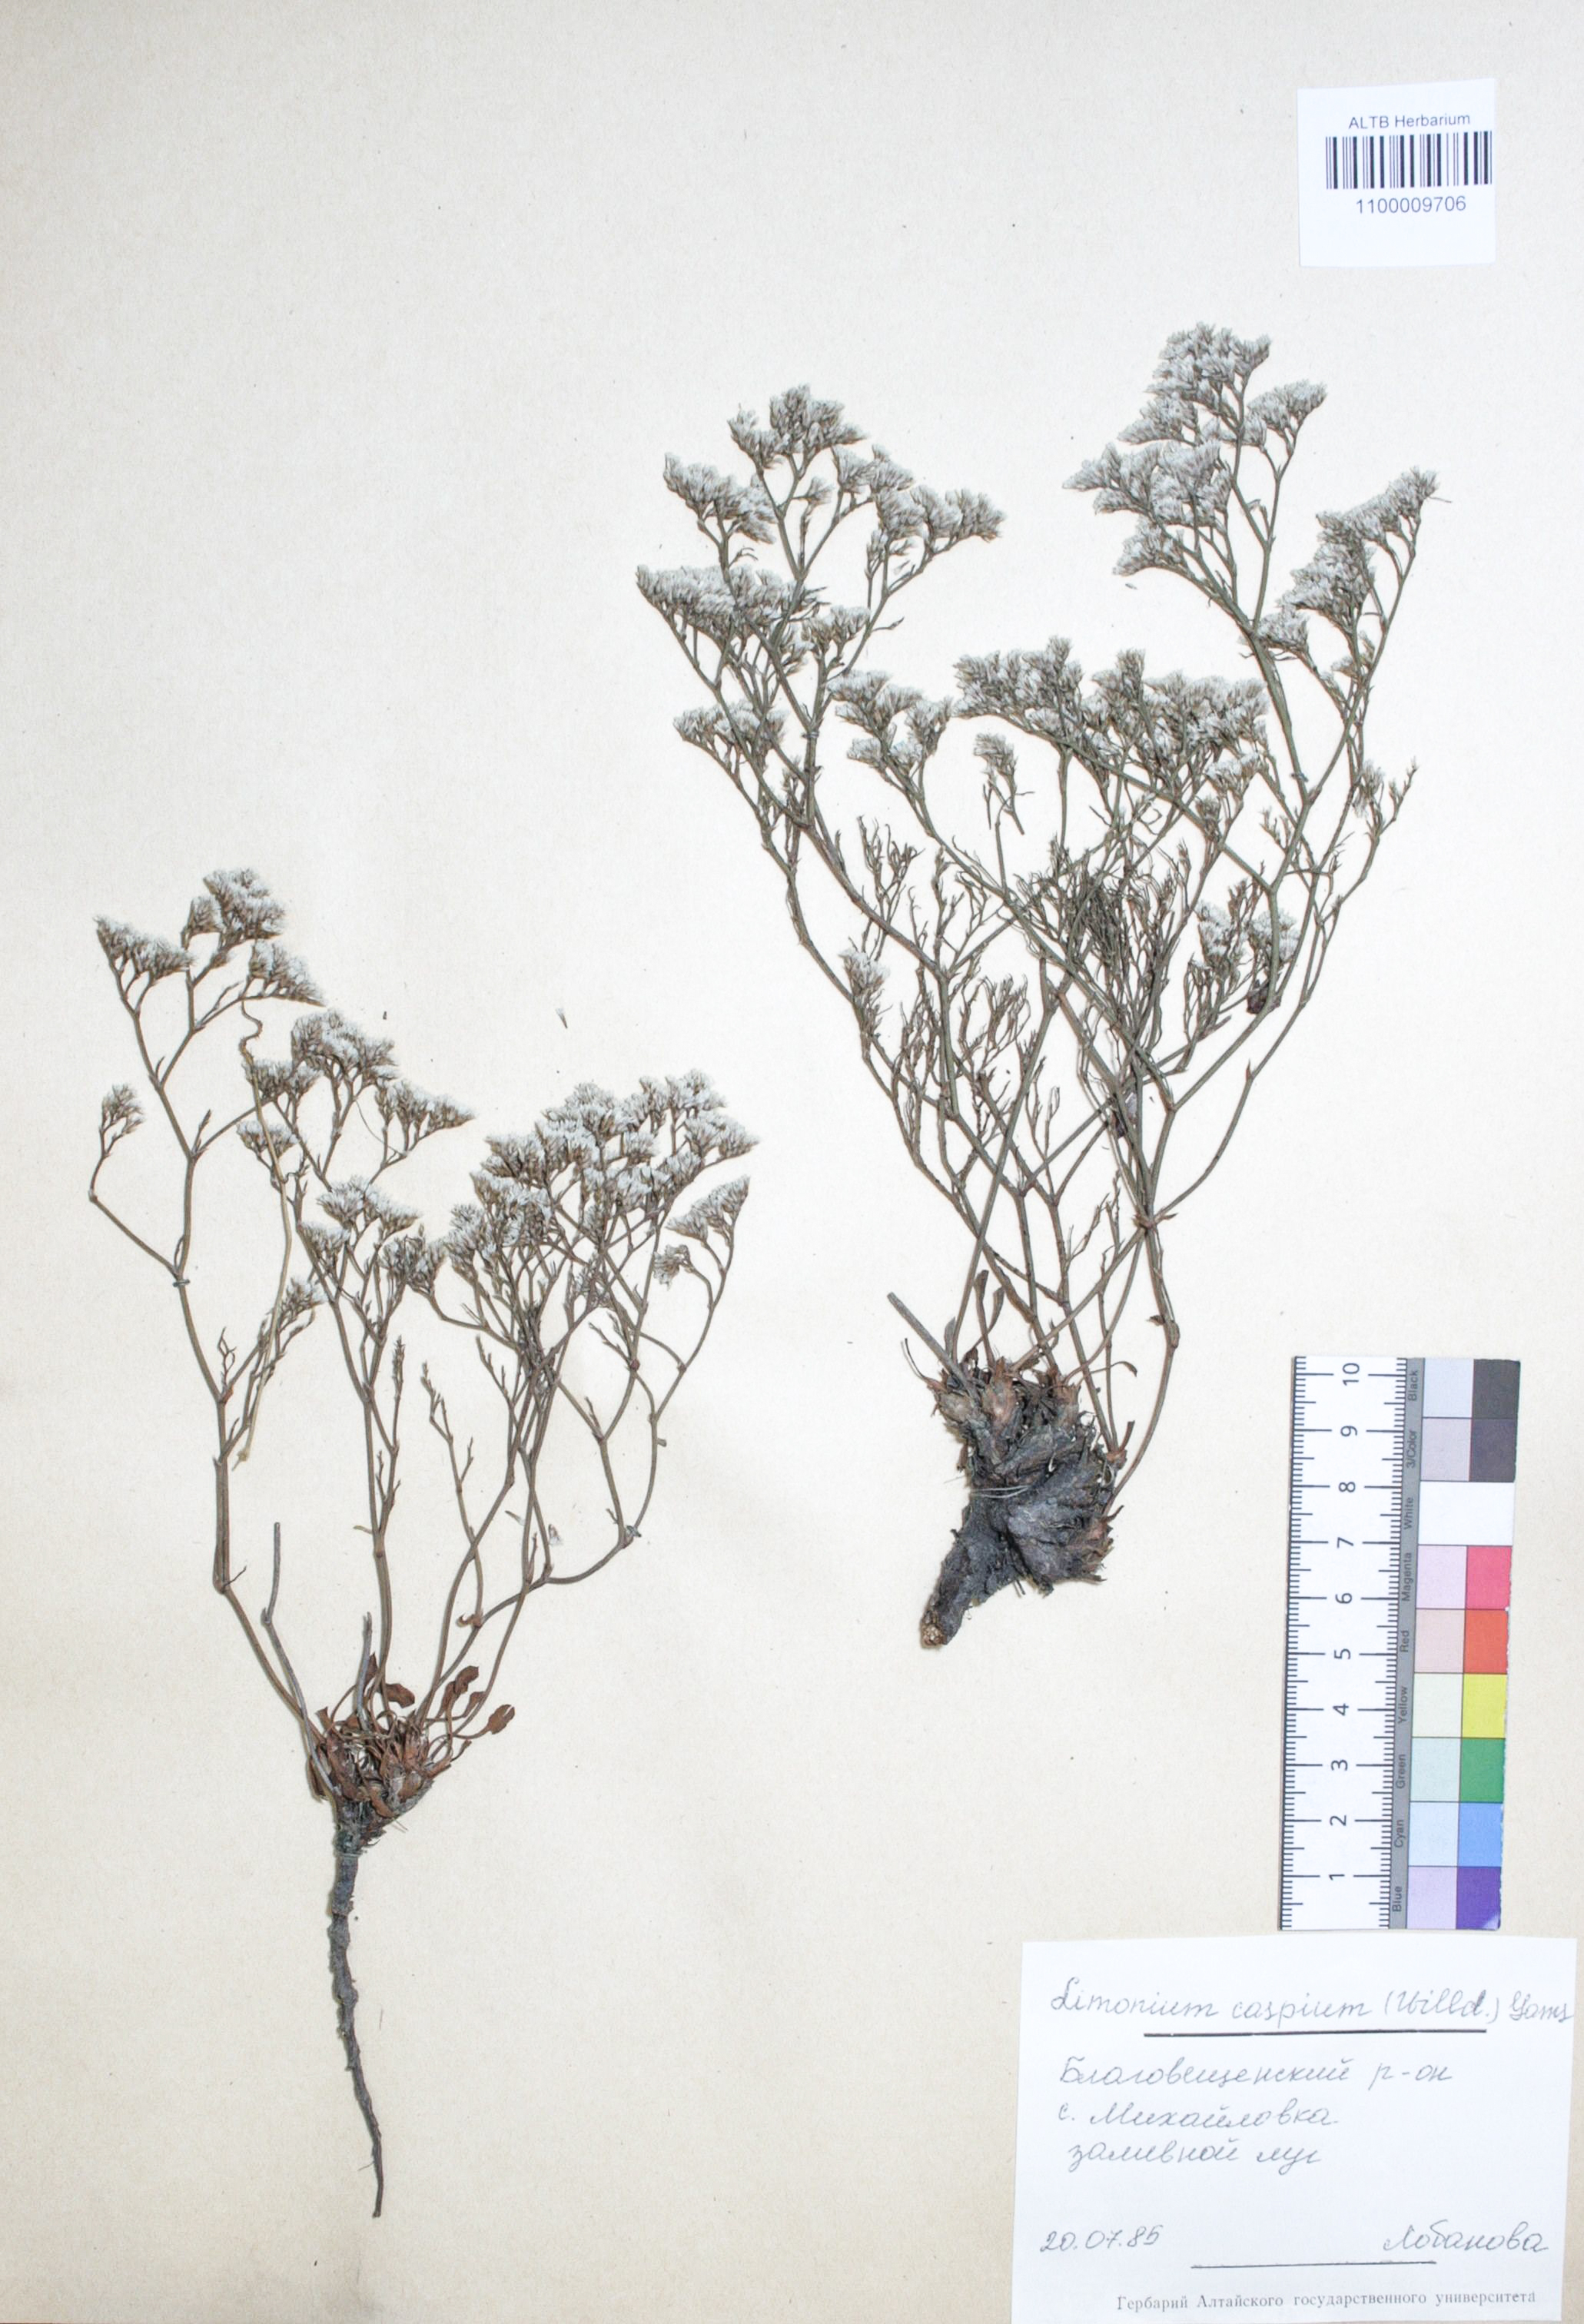 Limonium caspium (Willd.) Gams